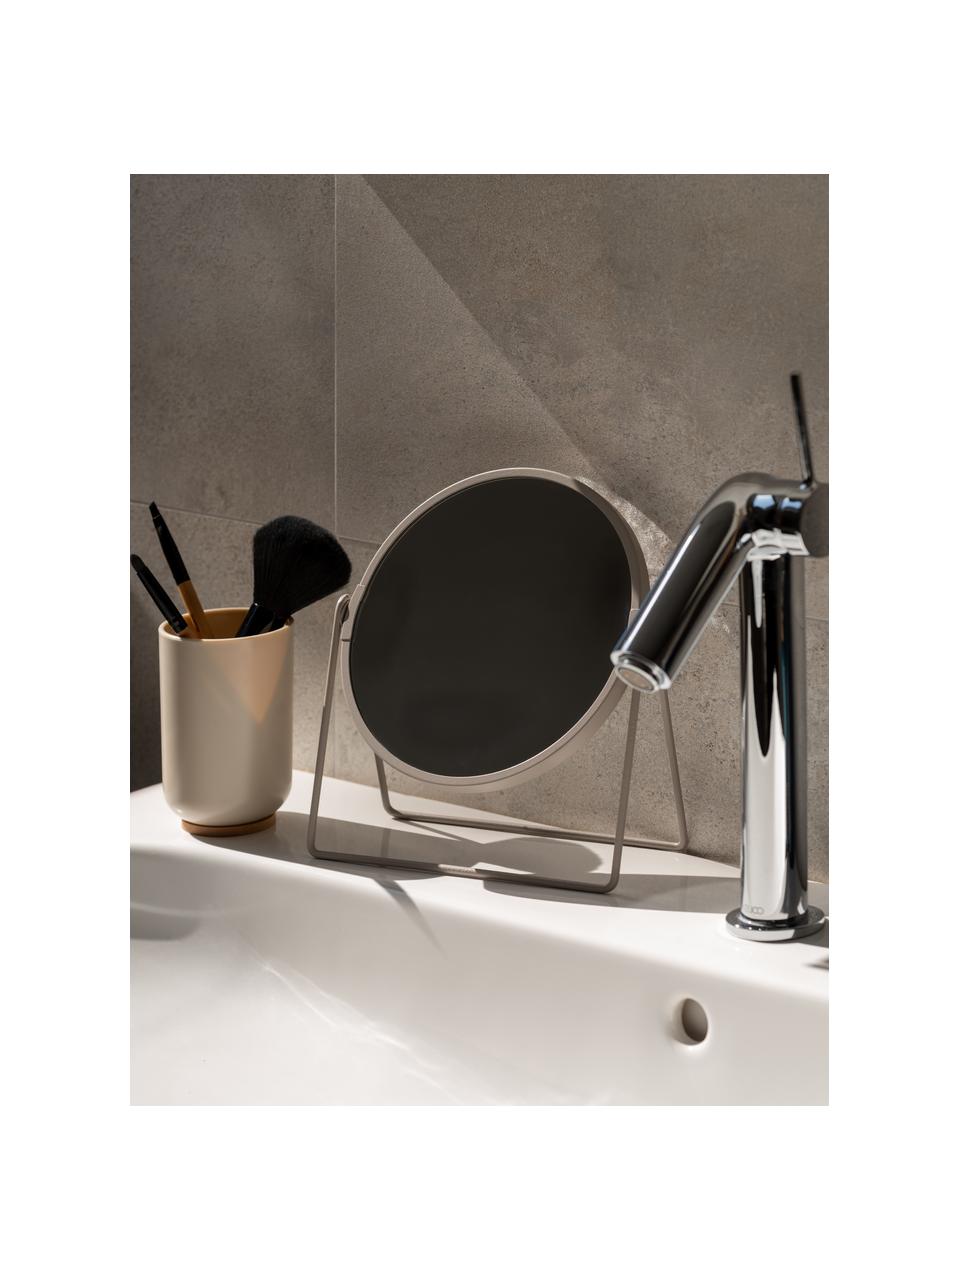 Runder Kosmetikspiegel Enlarge mit Vergrößerung, Rahmen: Kunststoff, Spiegelfläche: Spiegelglas, Greige, B 19 x H 21 cm